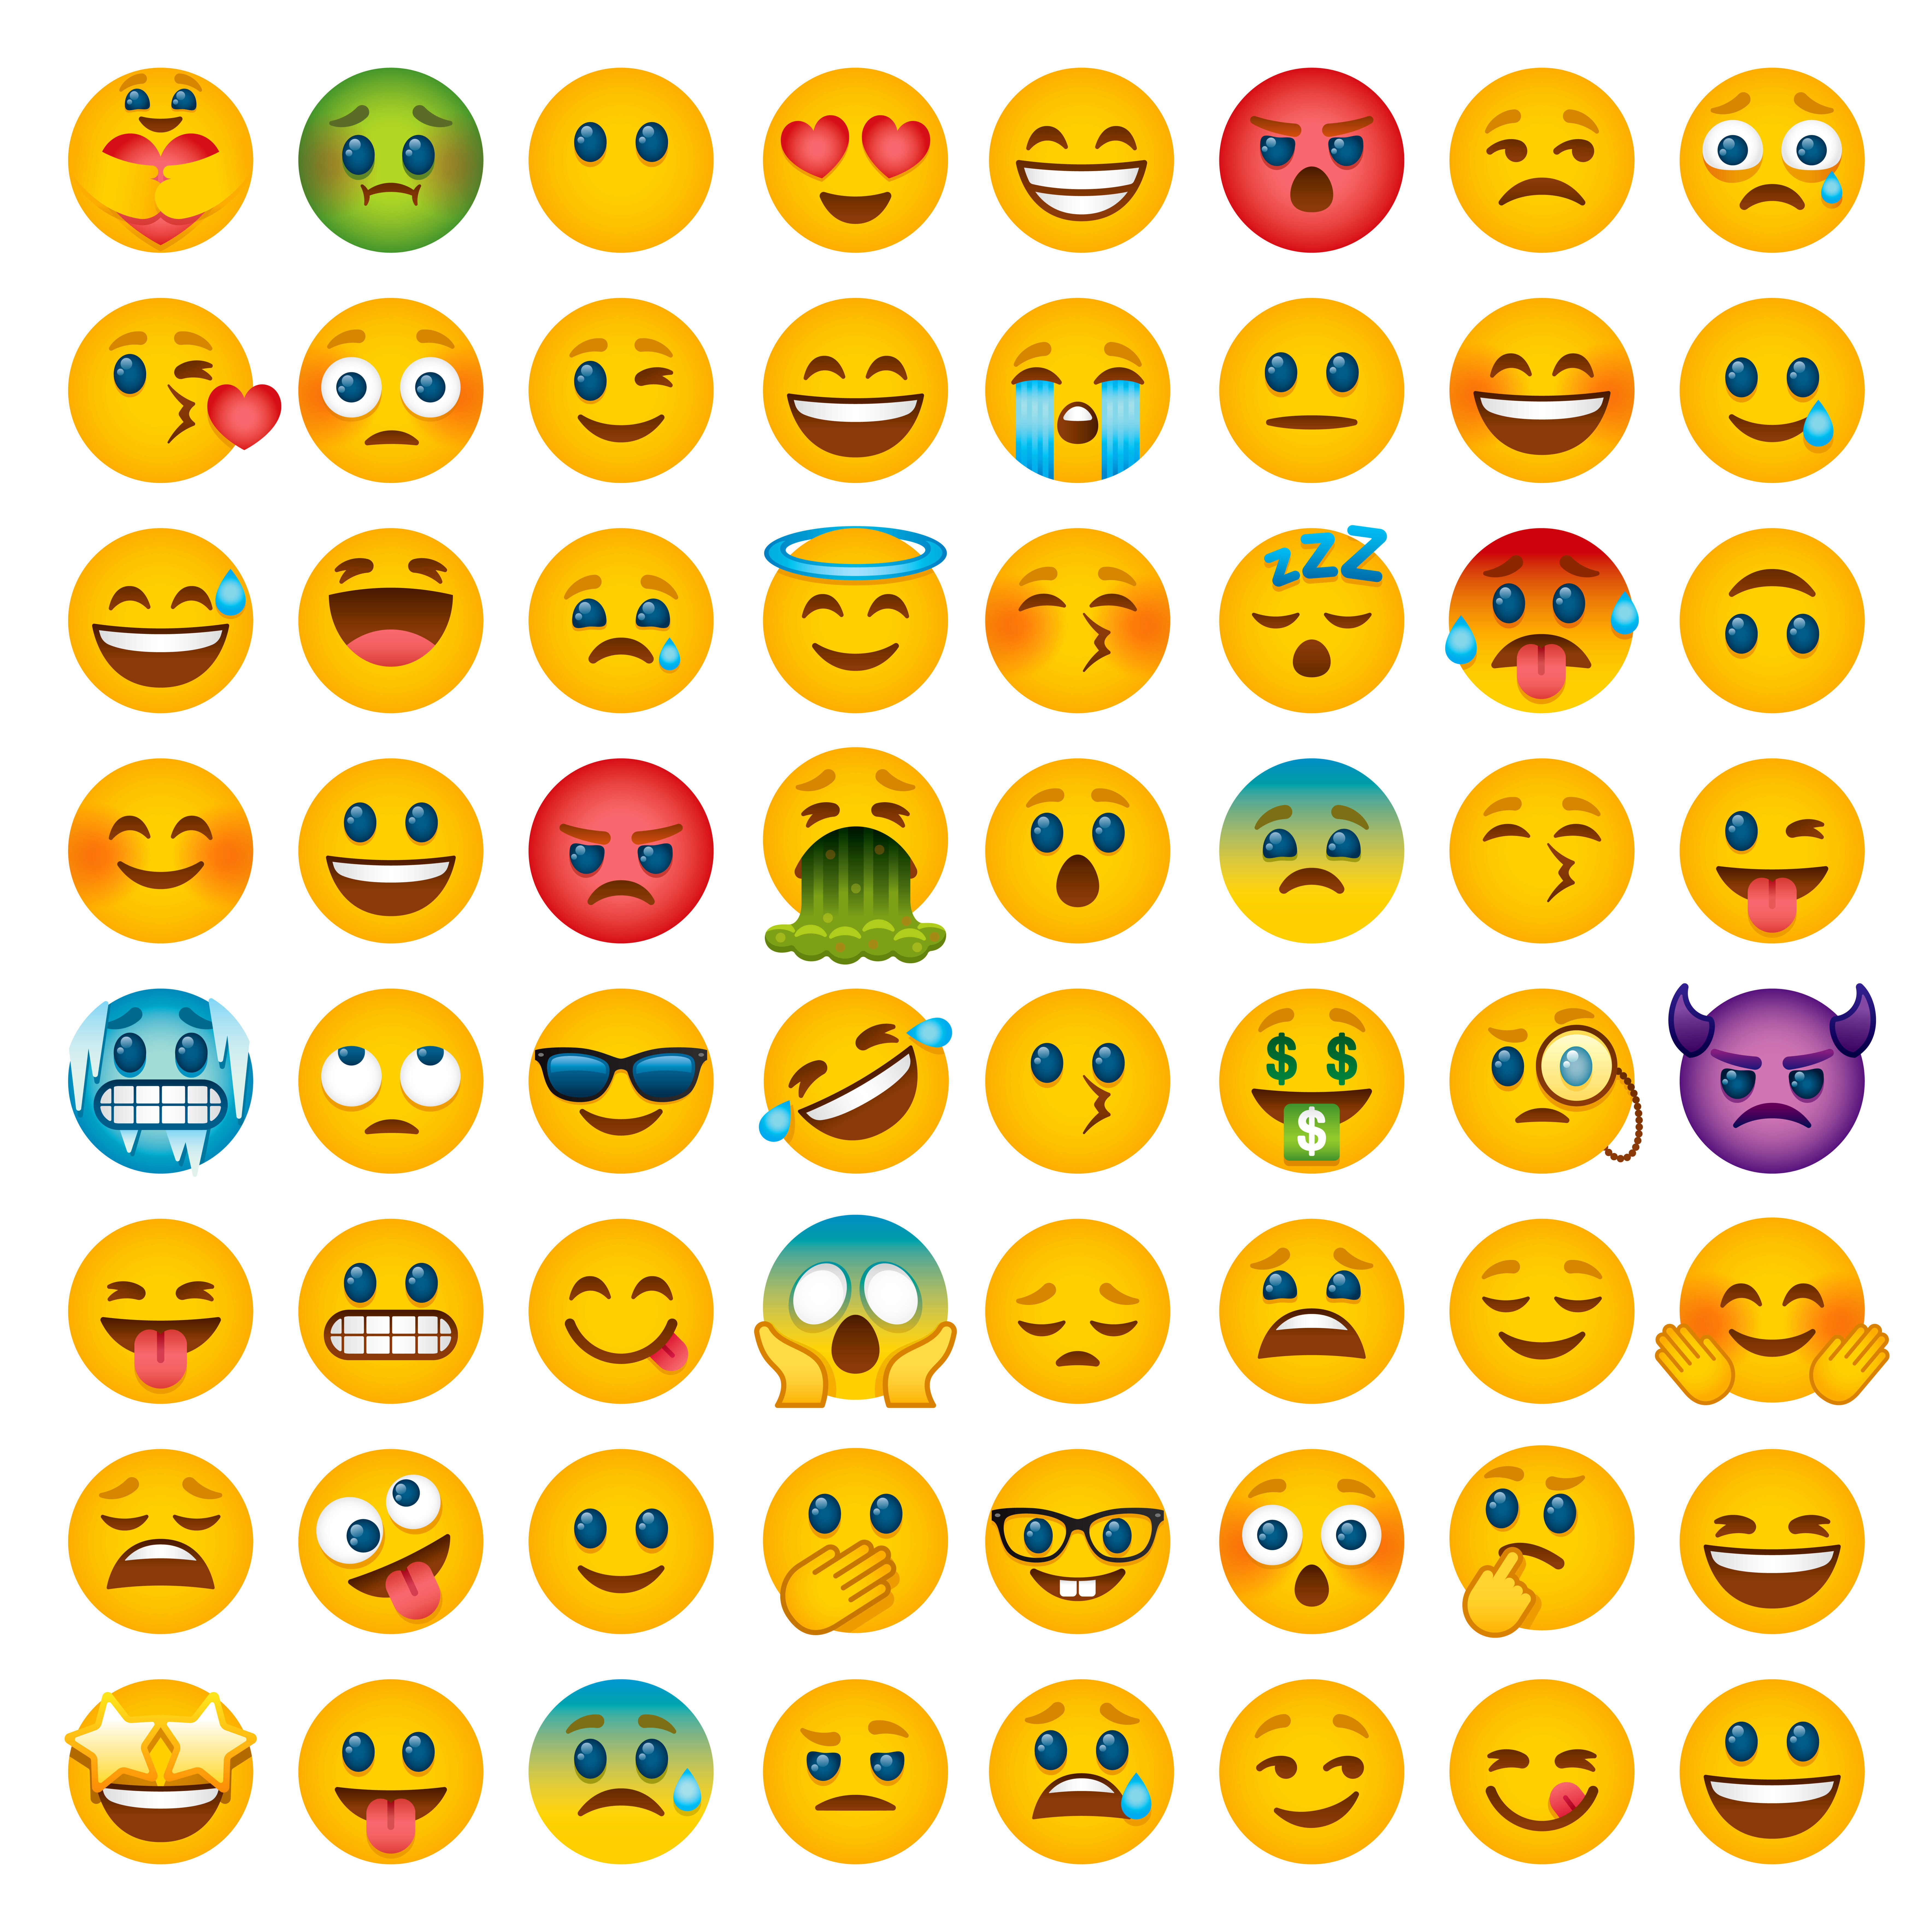 Cet emoji est resté le plus populaire en 2021 image